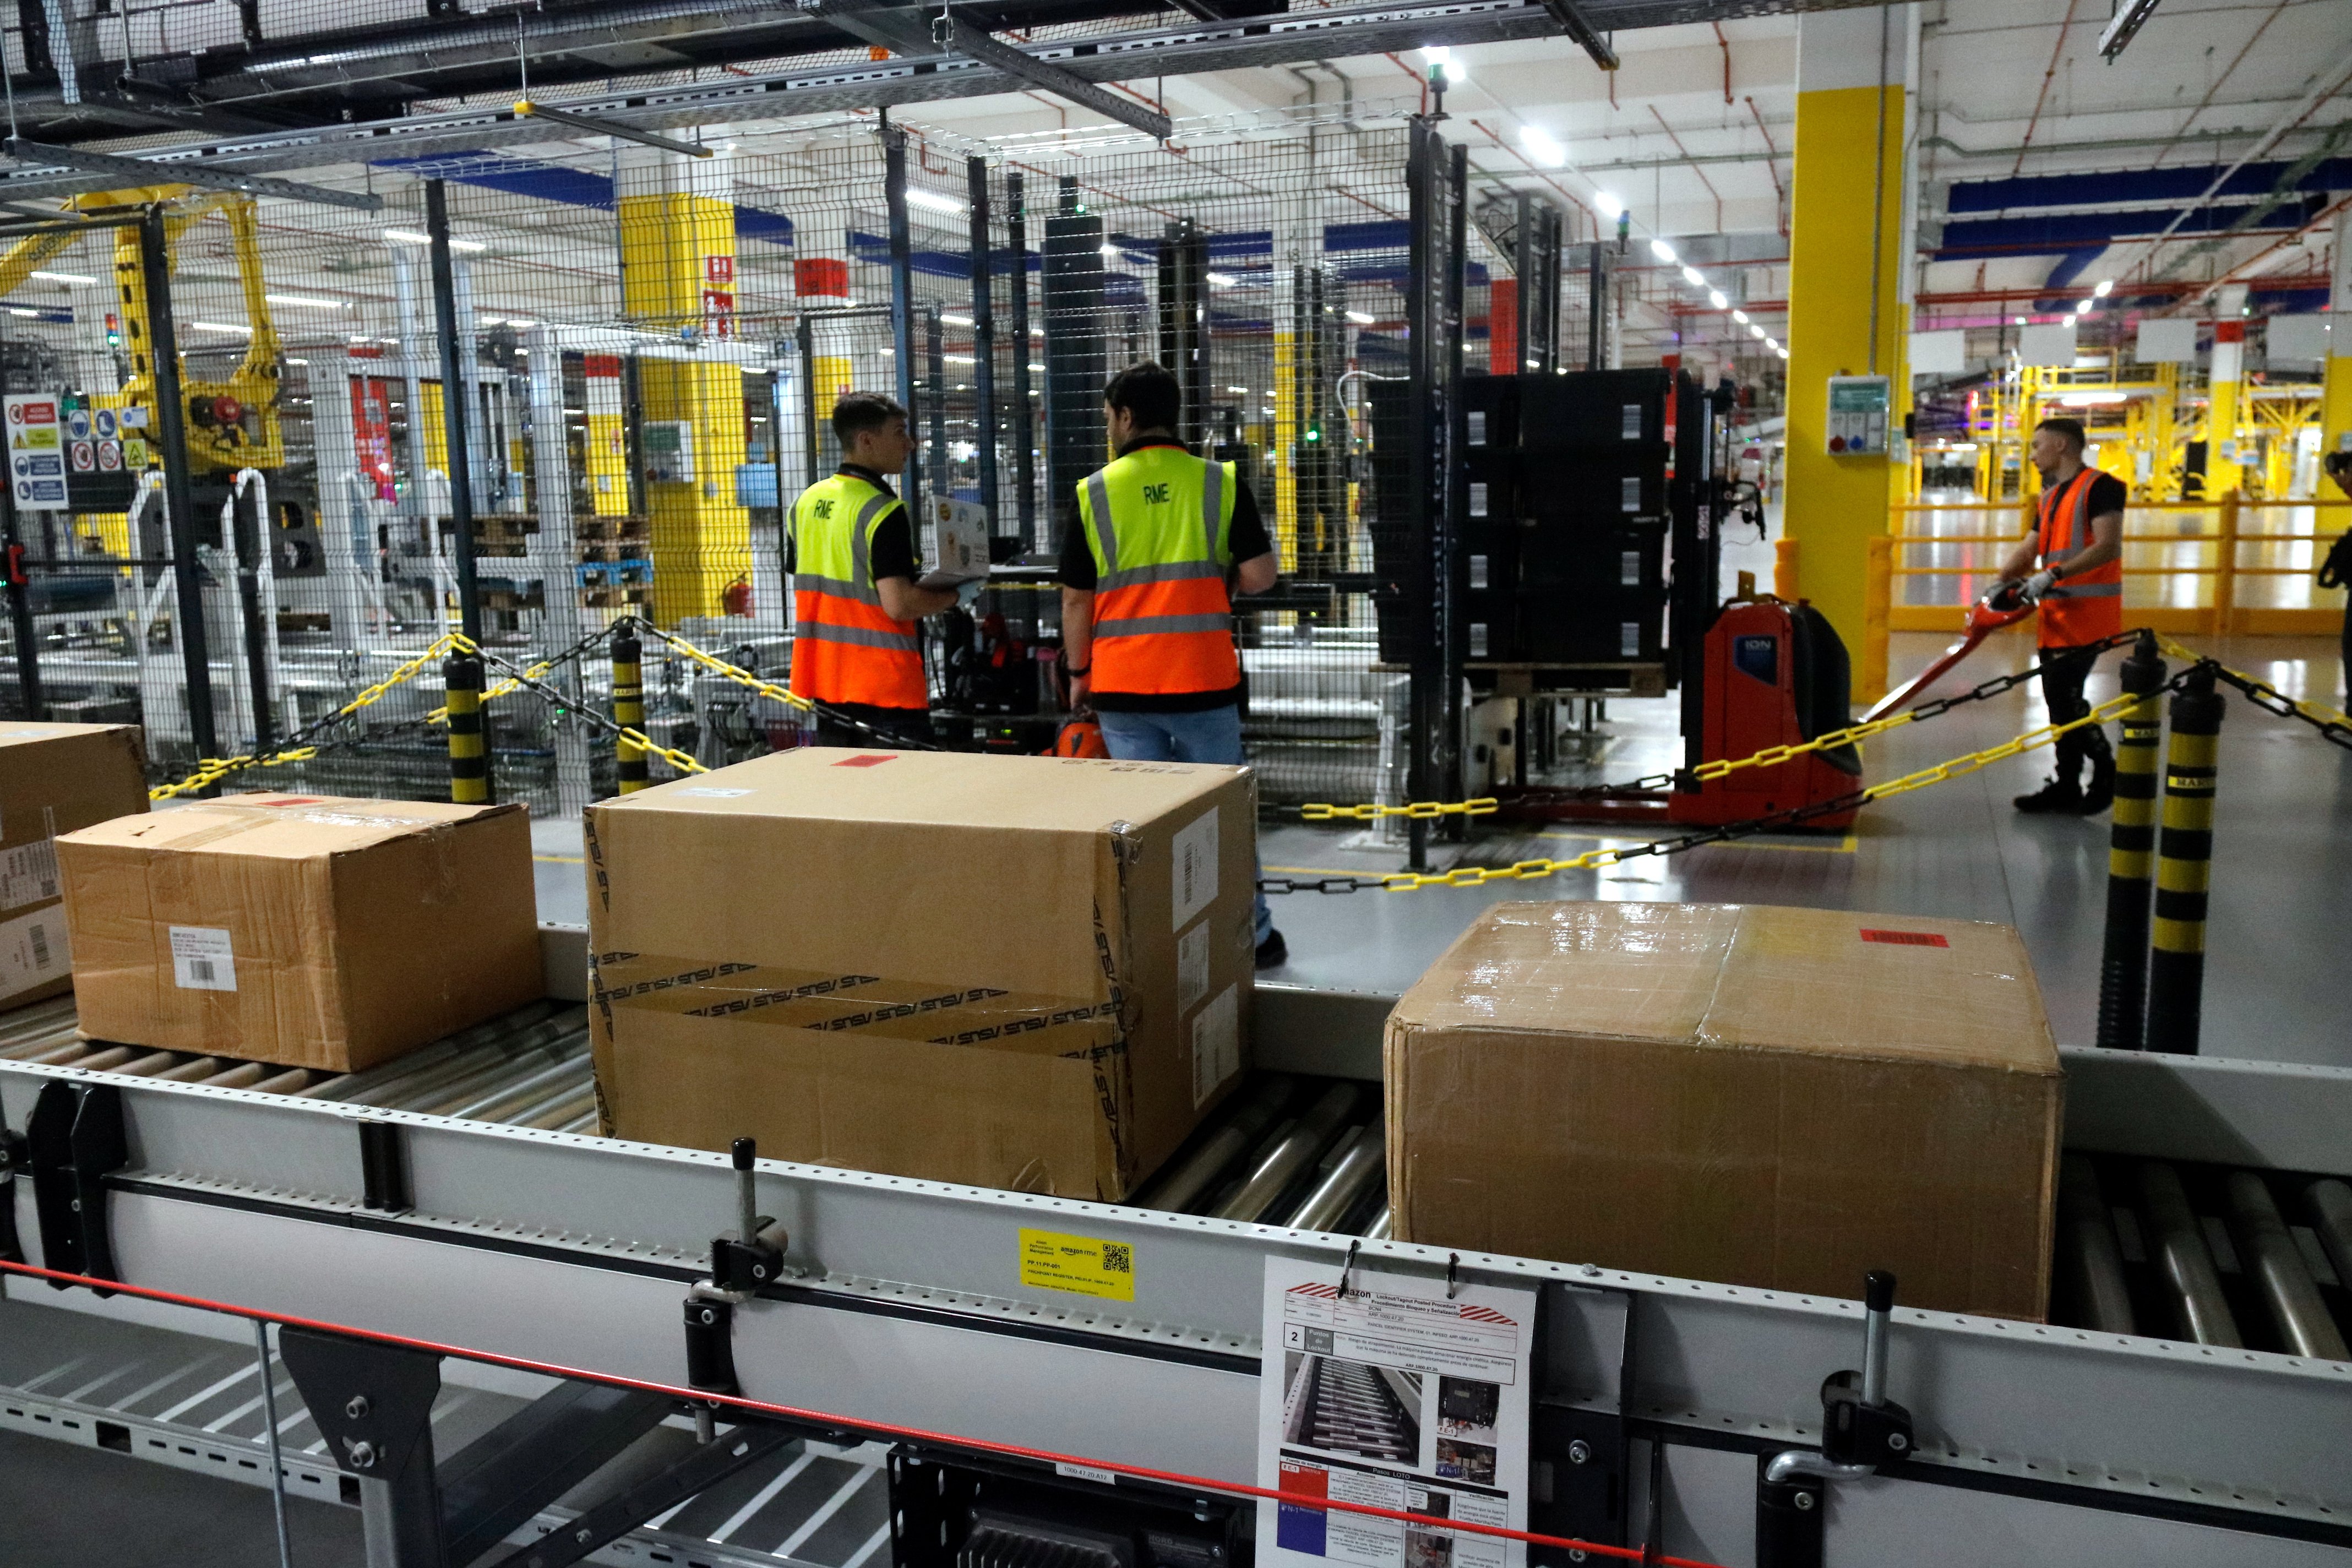 El almacén de Amazon en Figueres expedirá 600.000 pedidos diarios a toda Europa